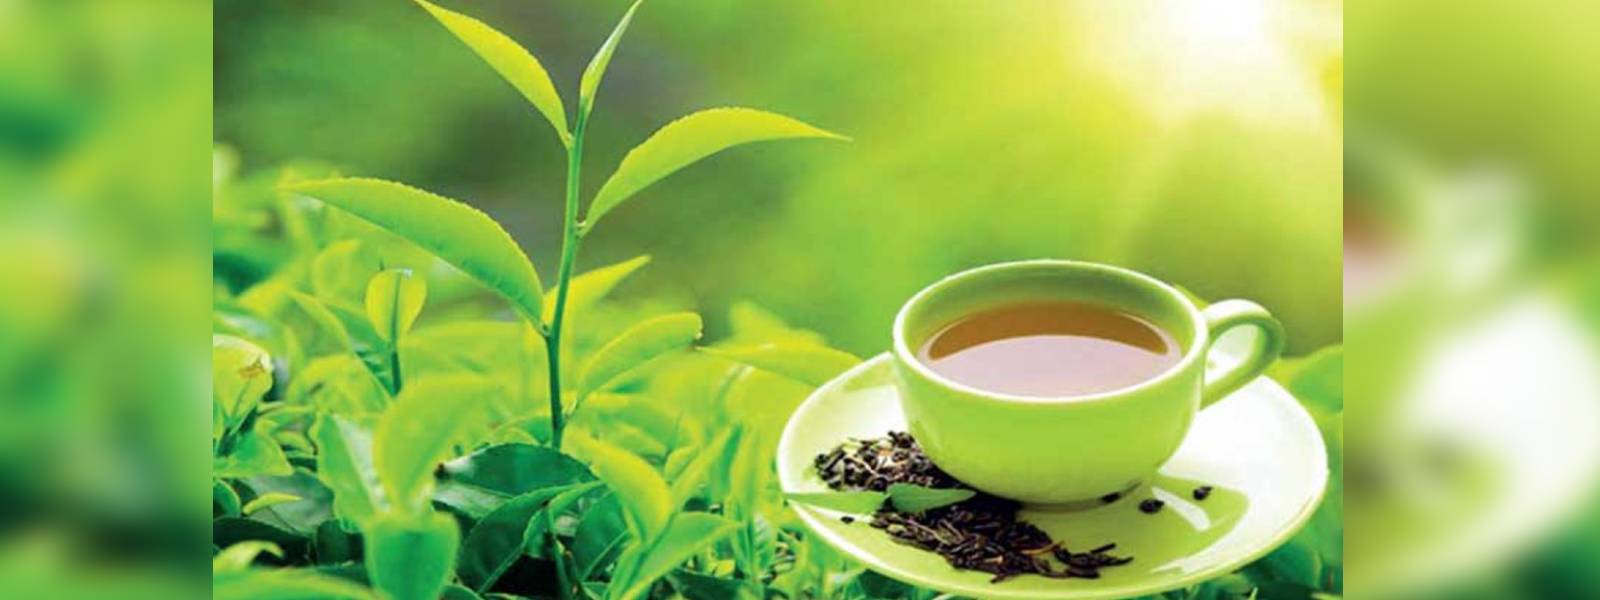 Ceylon Tea:ඉල්ලුමට හානිවීමට ඉඩ දෙන් නෑ